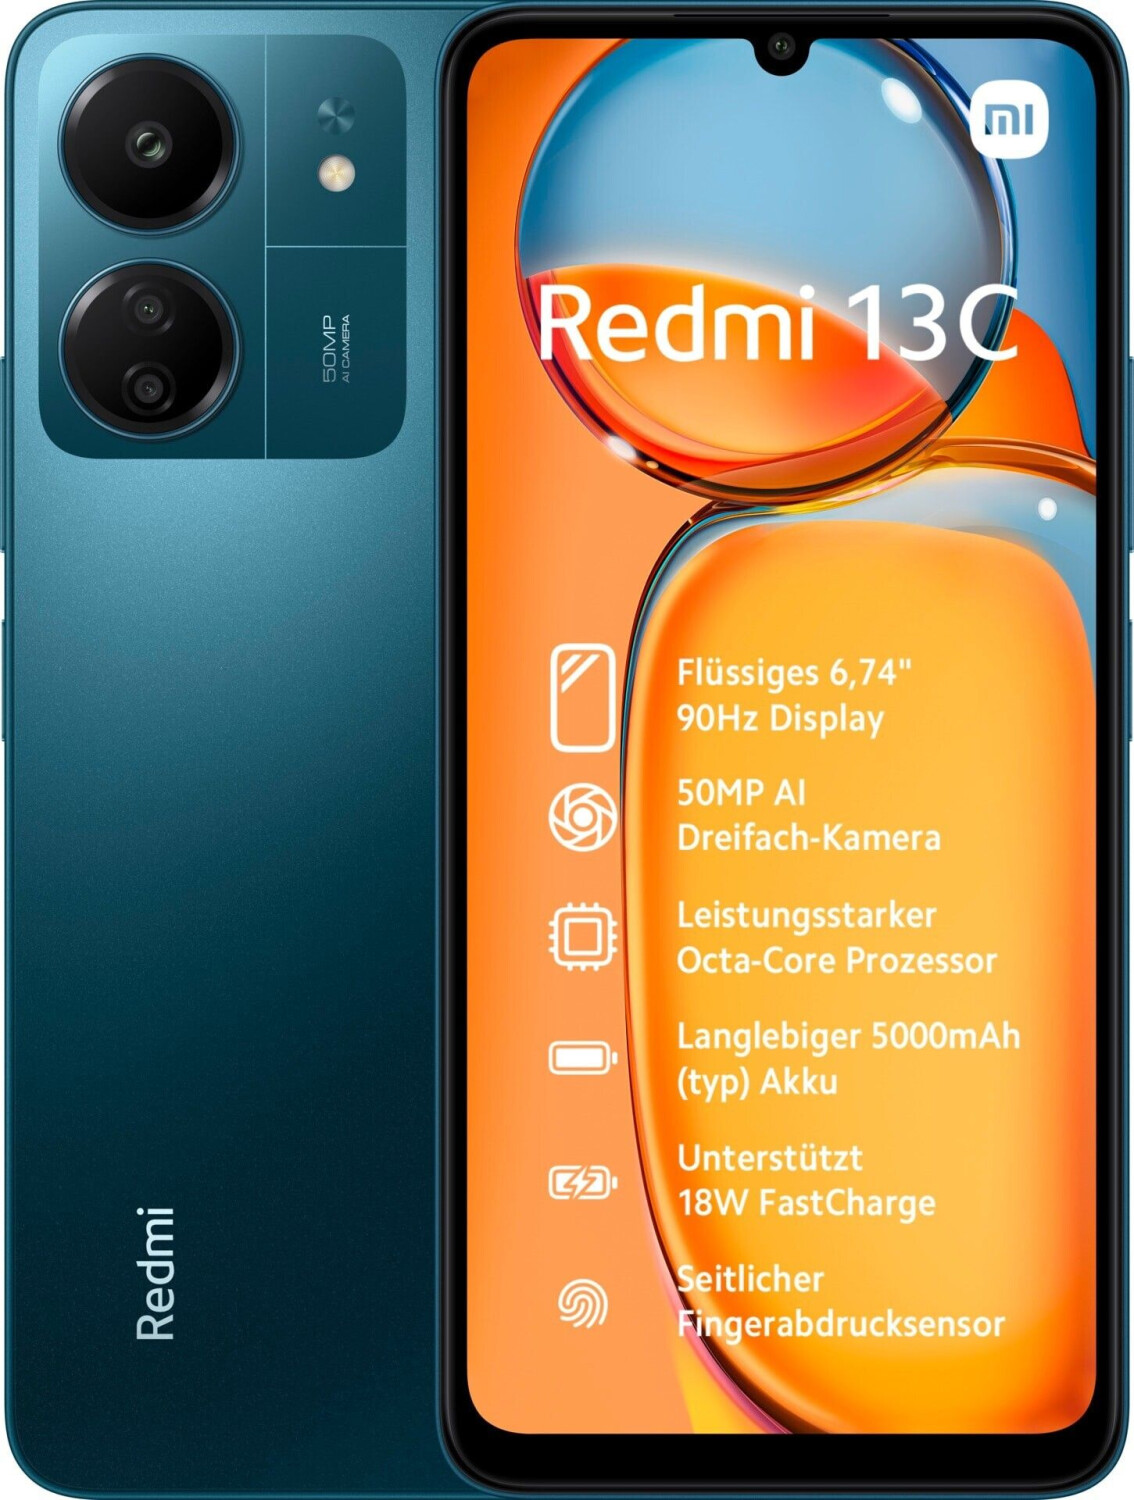 Buy Xiaomi Redmi 13C from £95.99 (Today) – Best Deals on